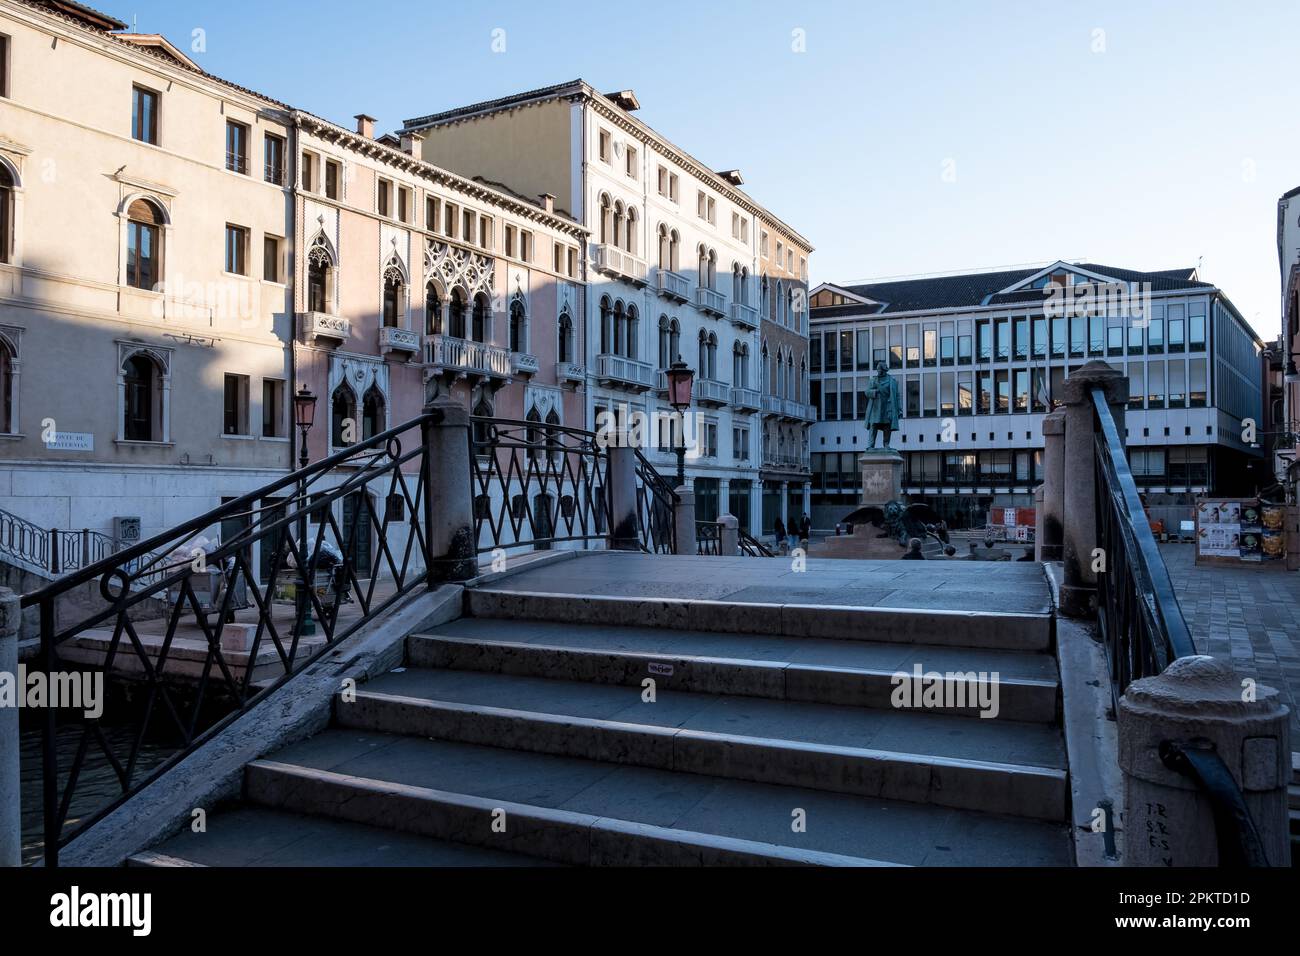 Vista su campo Manin, piazza della città situata a Venezia, dal Ponte de la Cortesia. Sullo sfondo il monumento dedicato a Daniele Manin Foto Stock